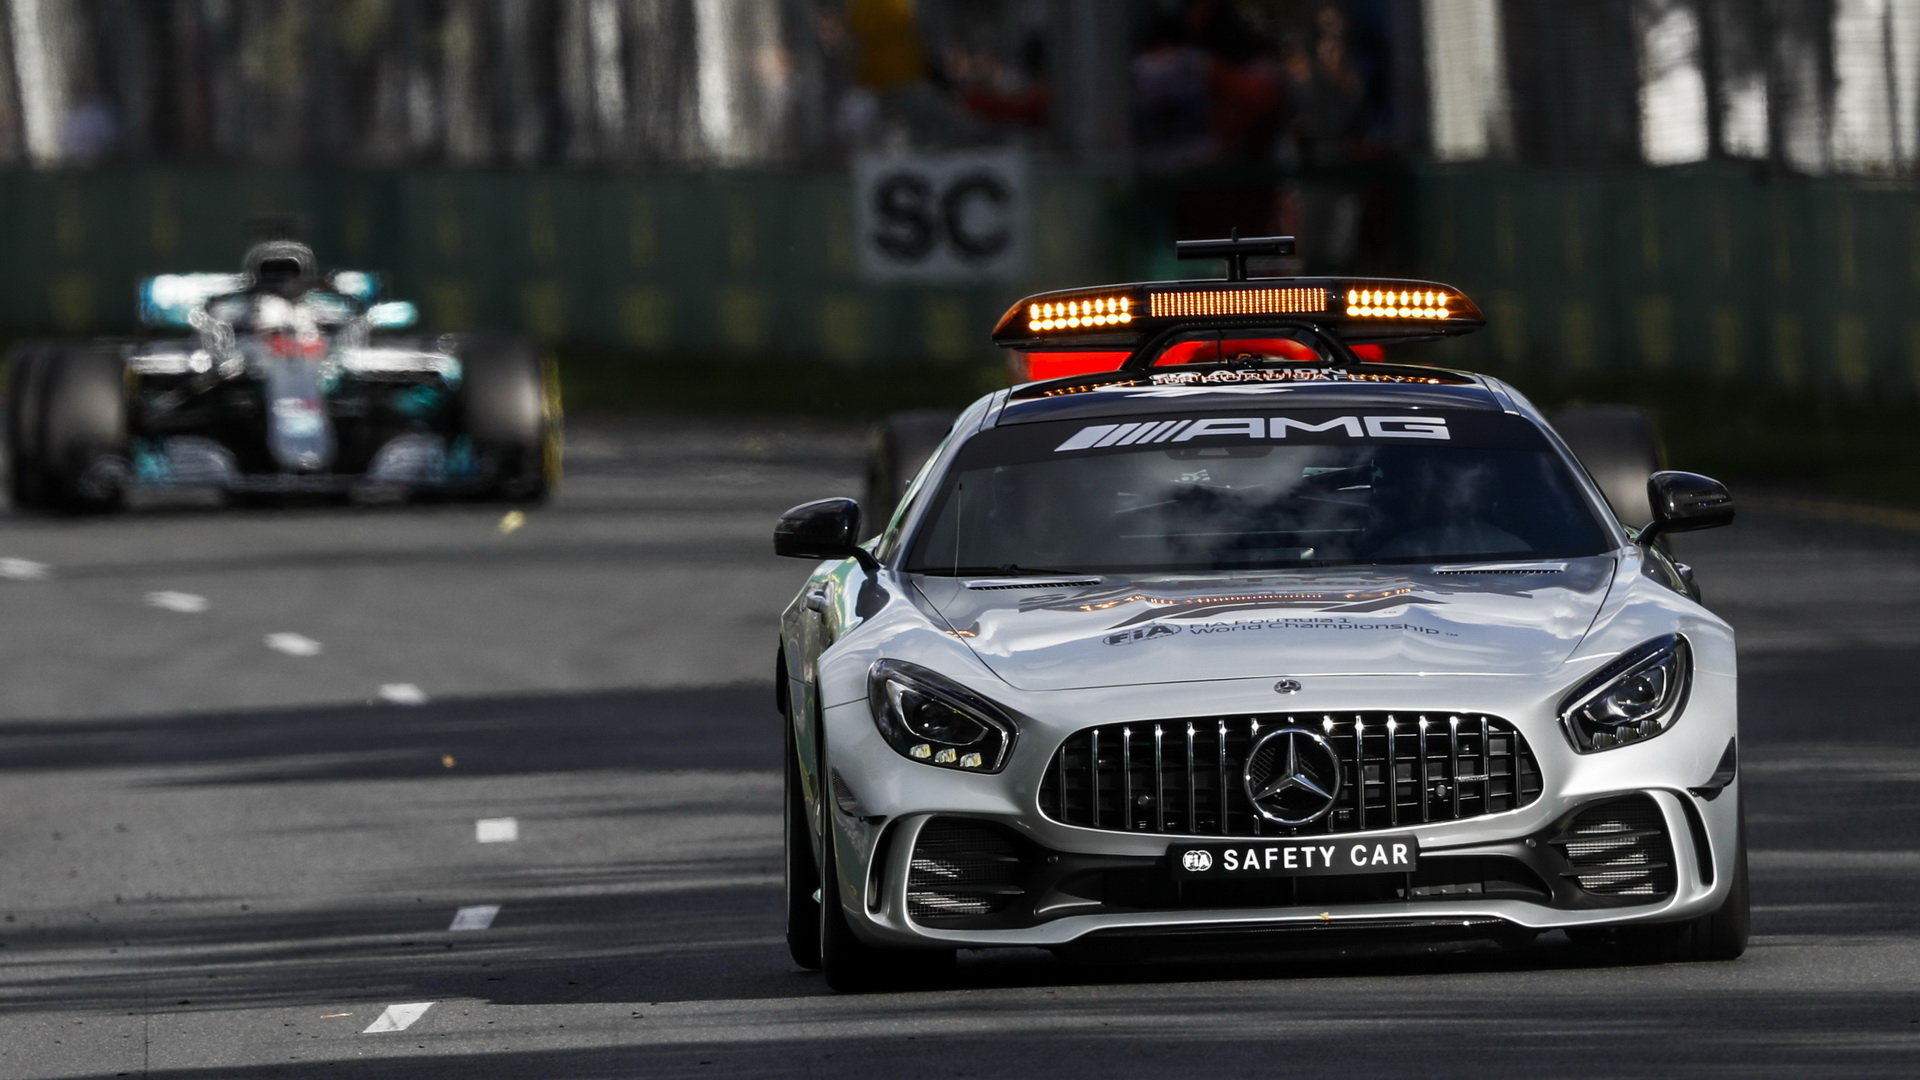 Lewis Hamilton za Safety carem v závodě v Melbourne v Austrálii